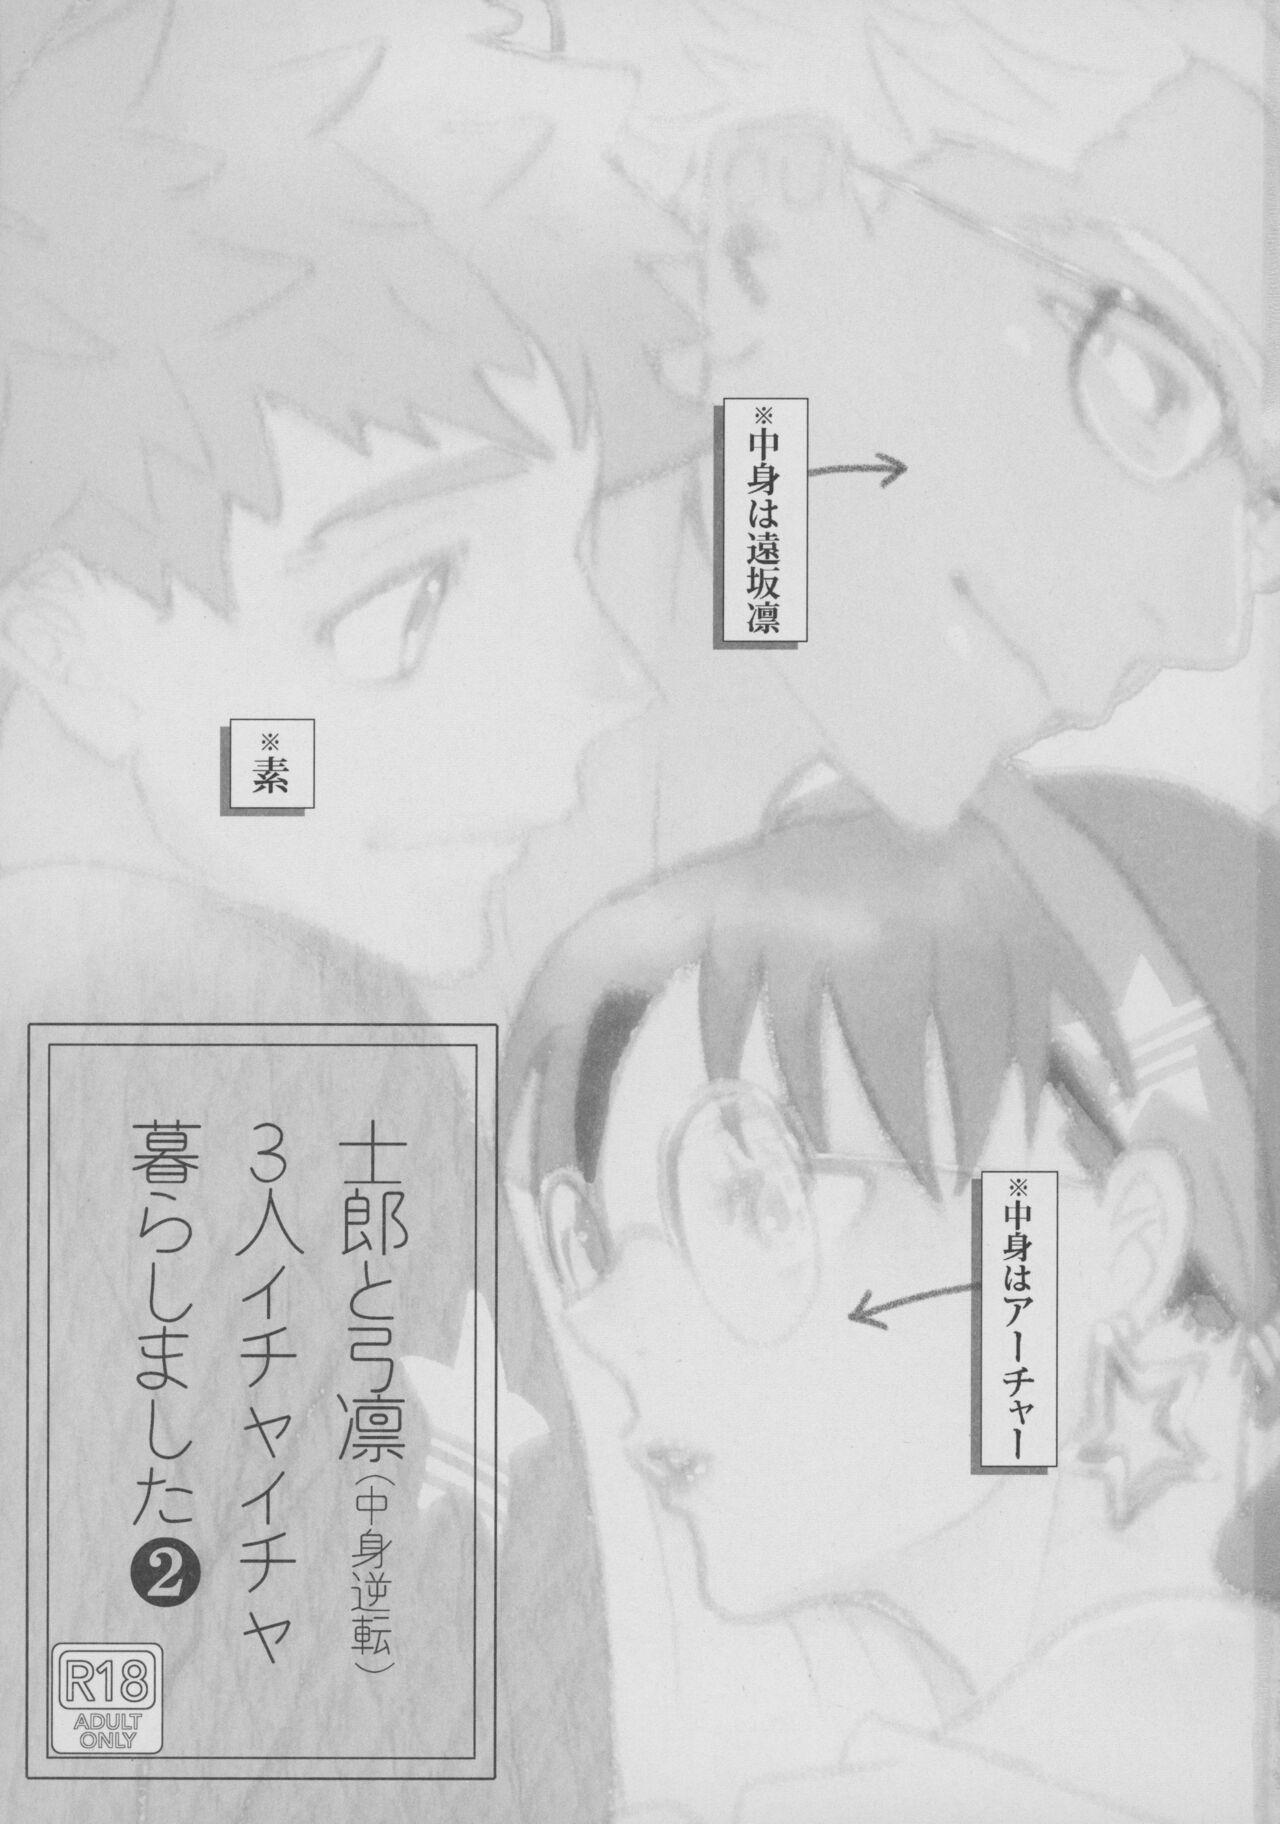 Redhead (Dai 23-ji ROOT4to5) [Aniyagumi (Aniya Yuiji)] Shirou to Yumi Rin (Nakami Gyakuten) 3-nin Ichaicha Kurashimashita 2 (Fate/stay night) - Fate stay night Hooker - Page 2